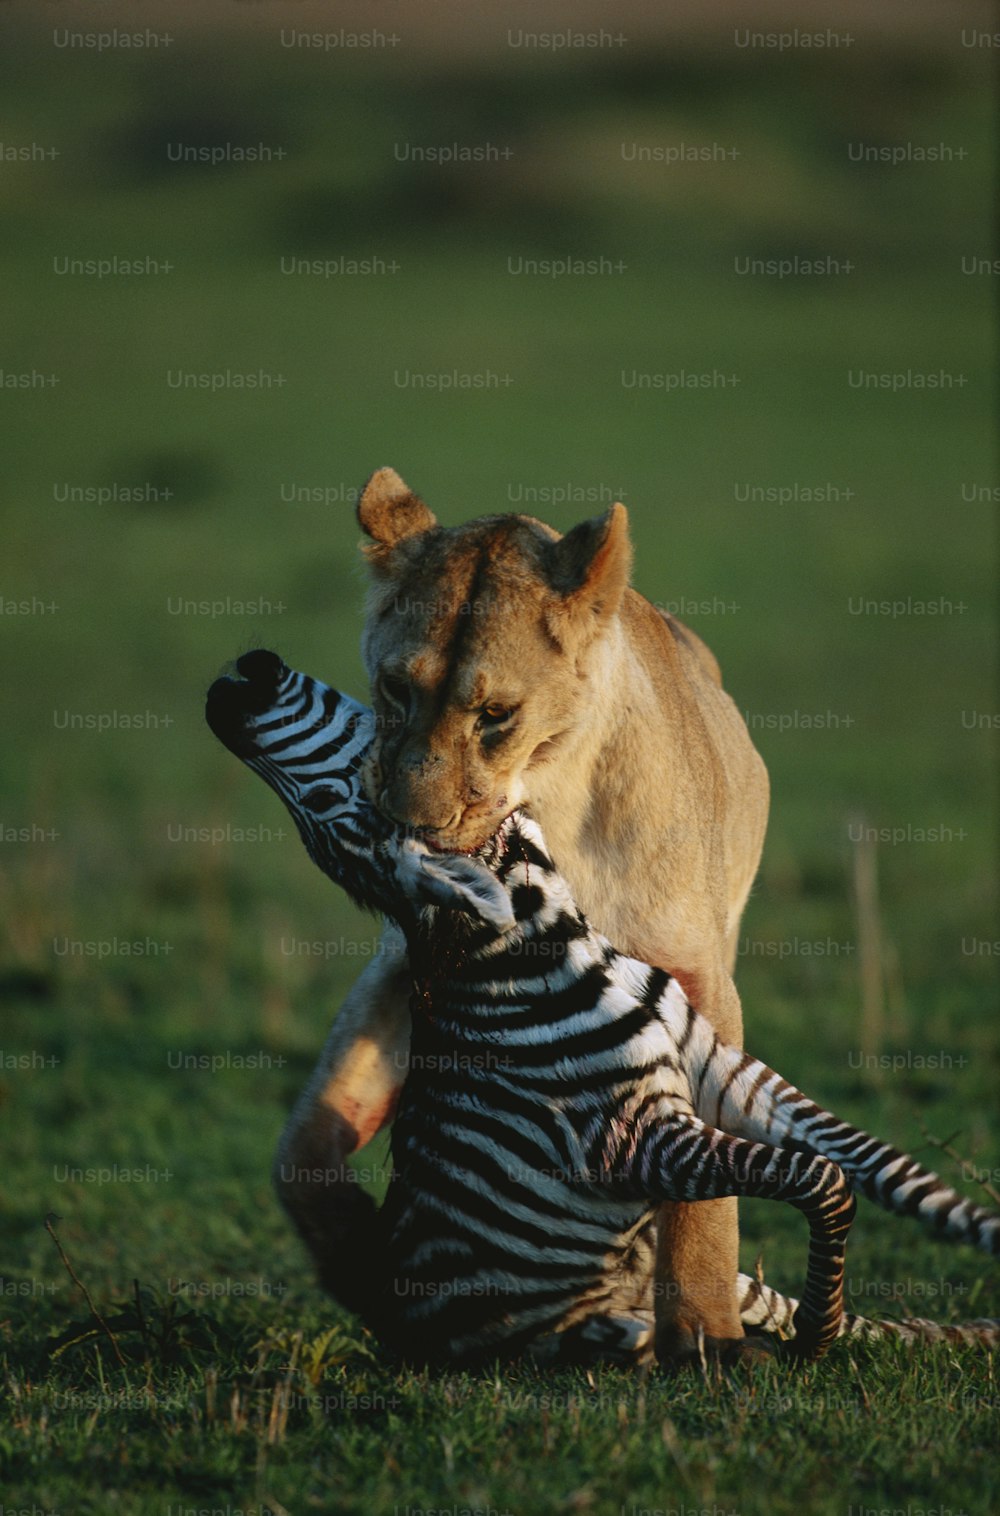 Un lion joue avec un zèbre dans un champ